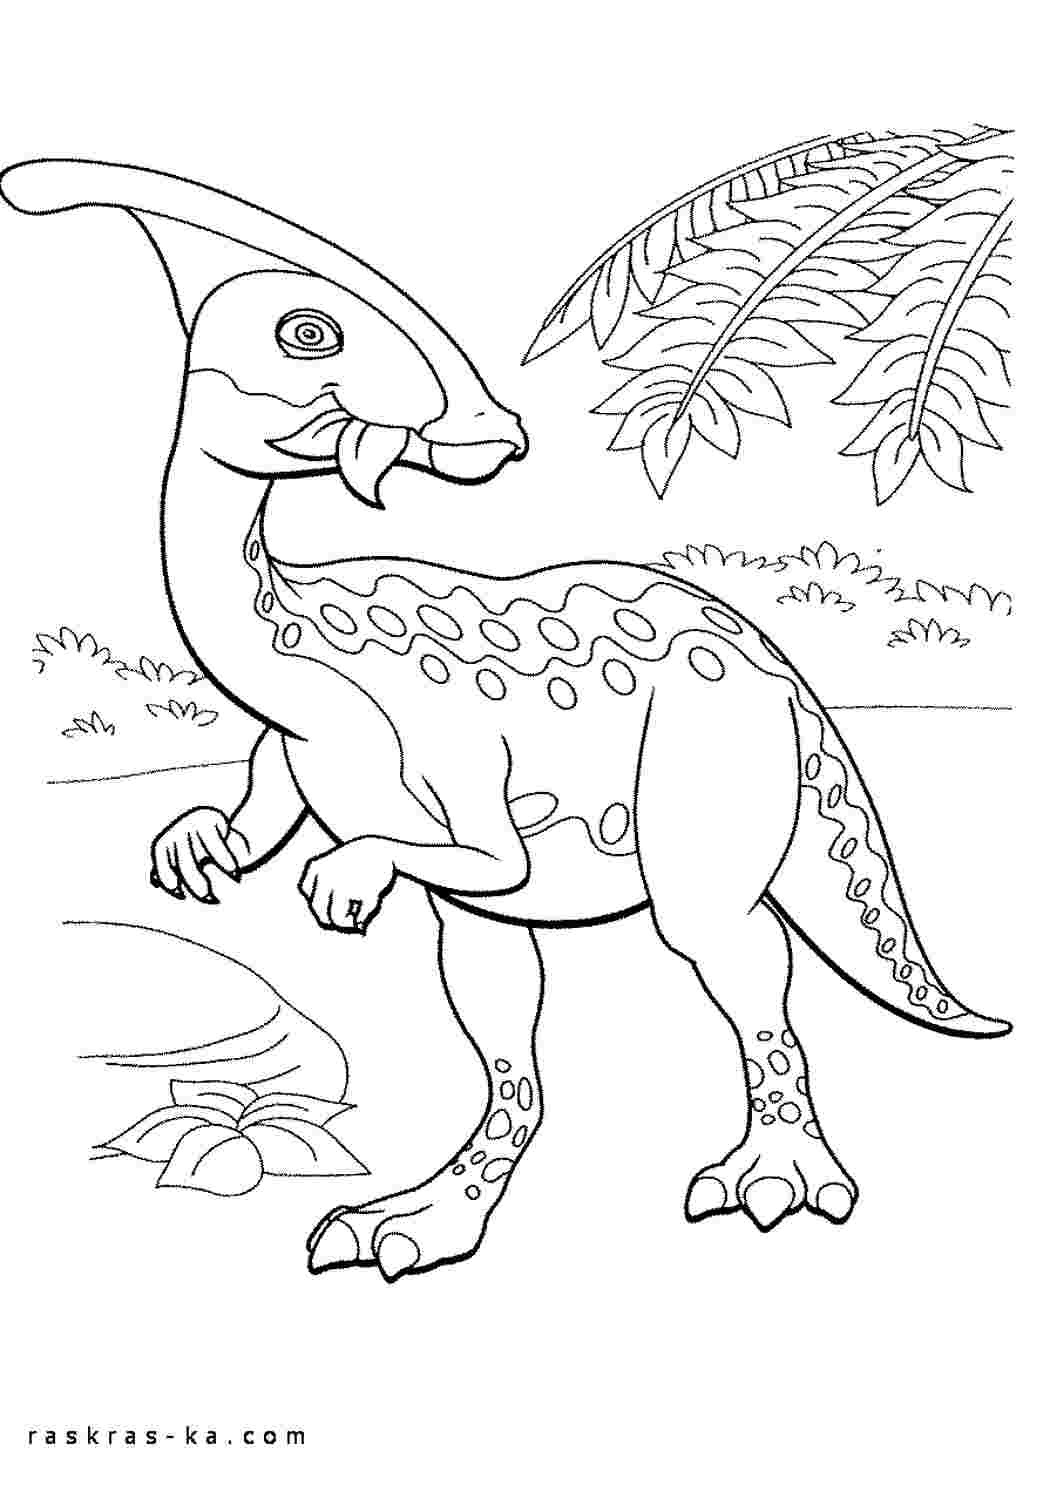 Раскраски для детей мальчиков Поезд динозавров